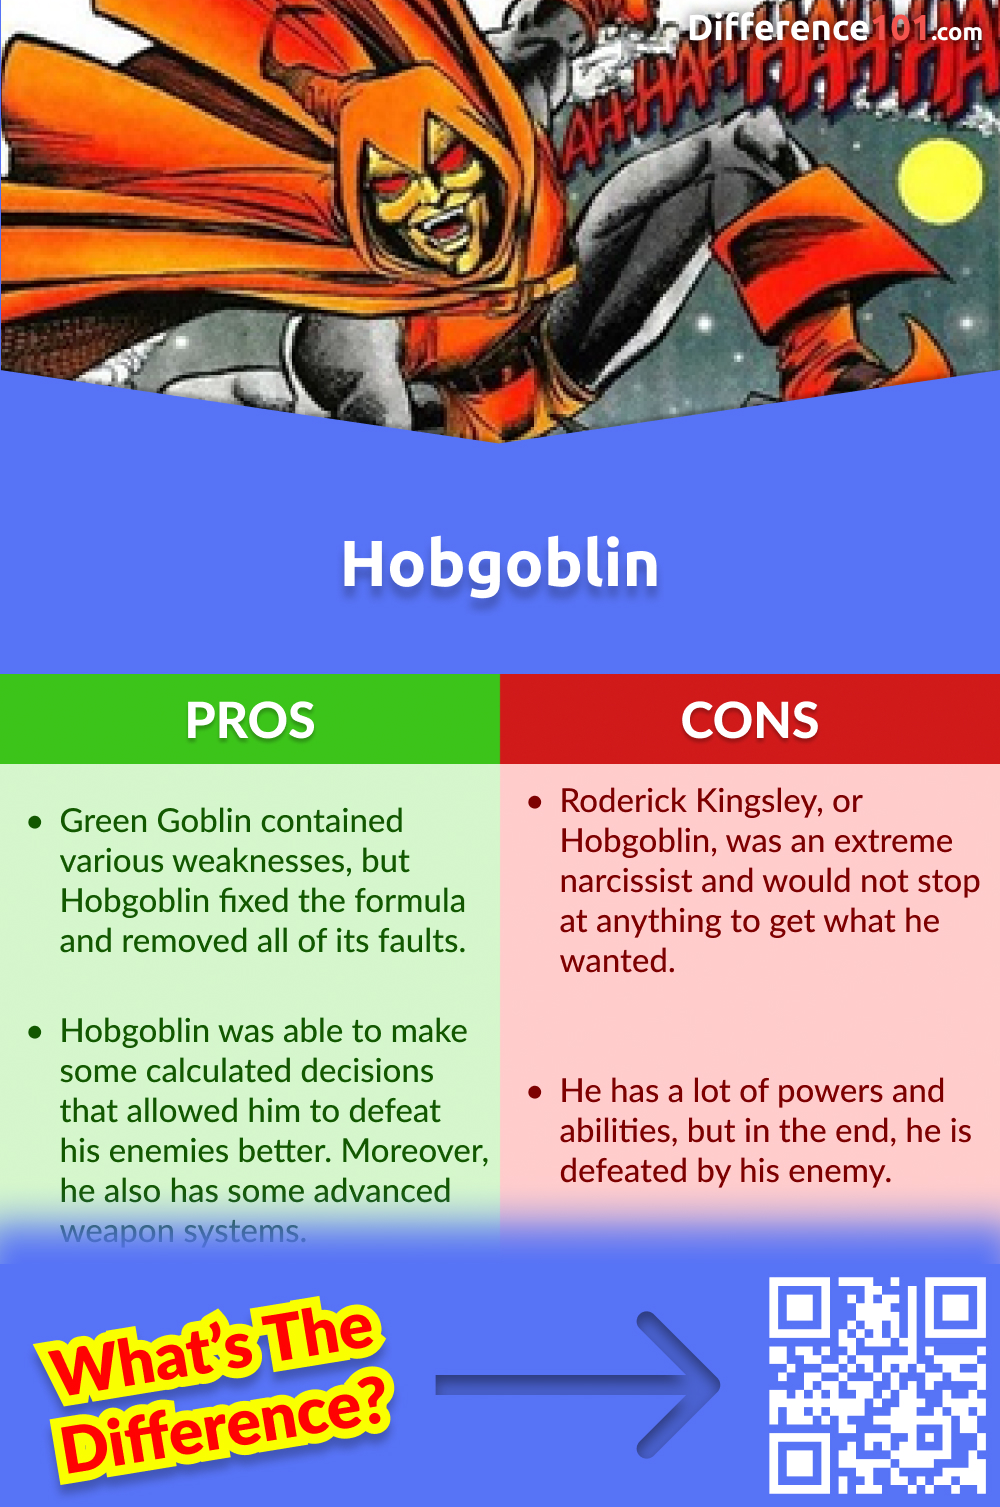 Hobgoblin Pros and Cons